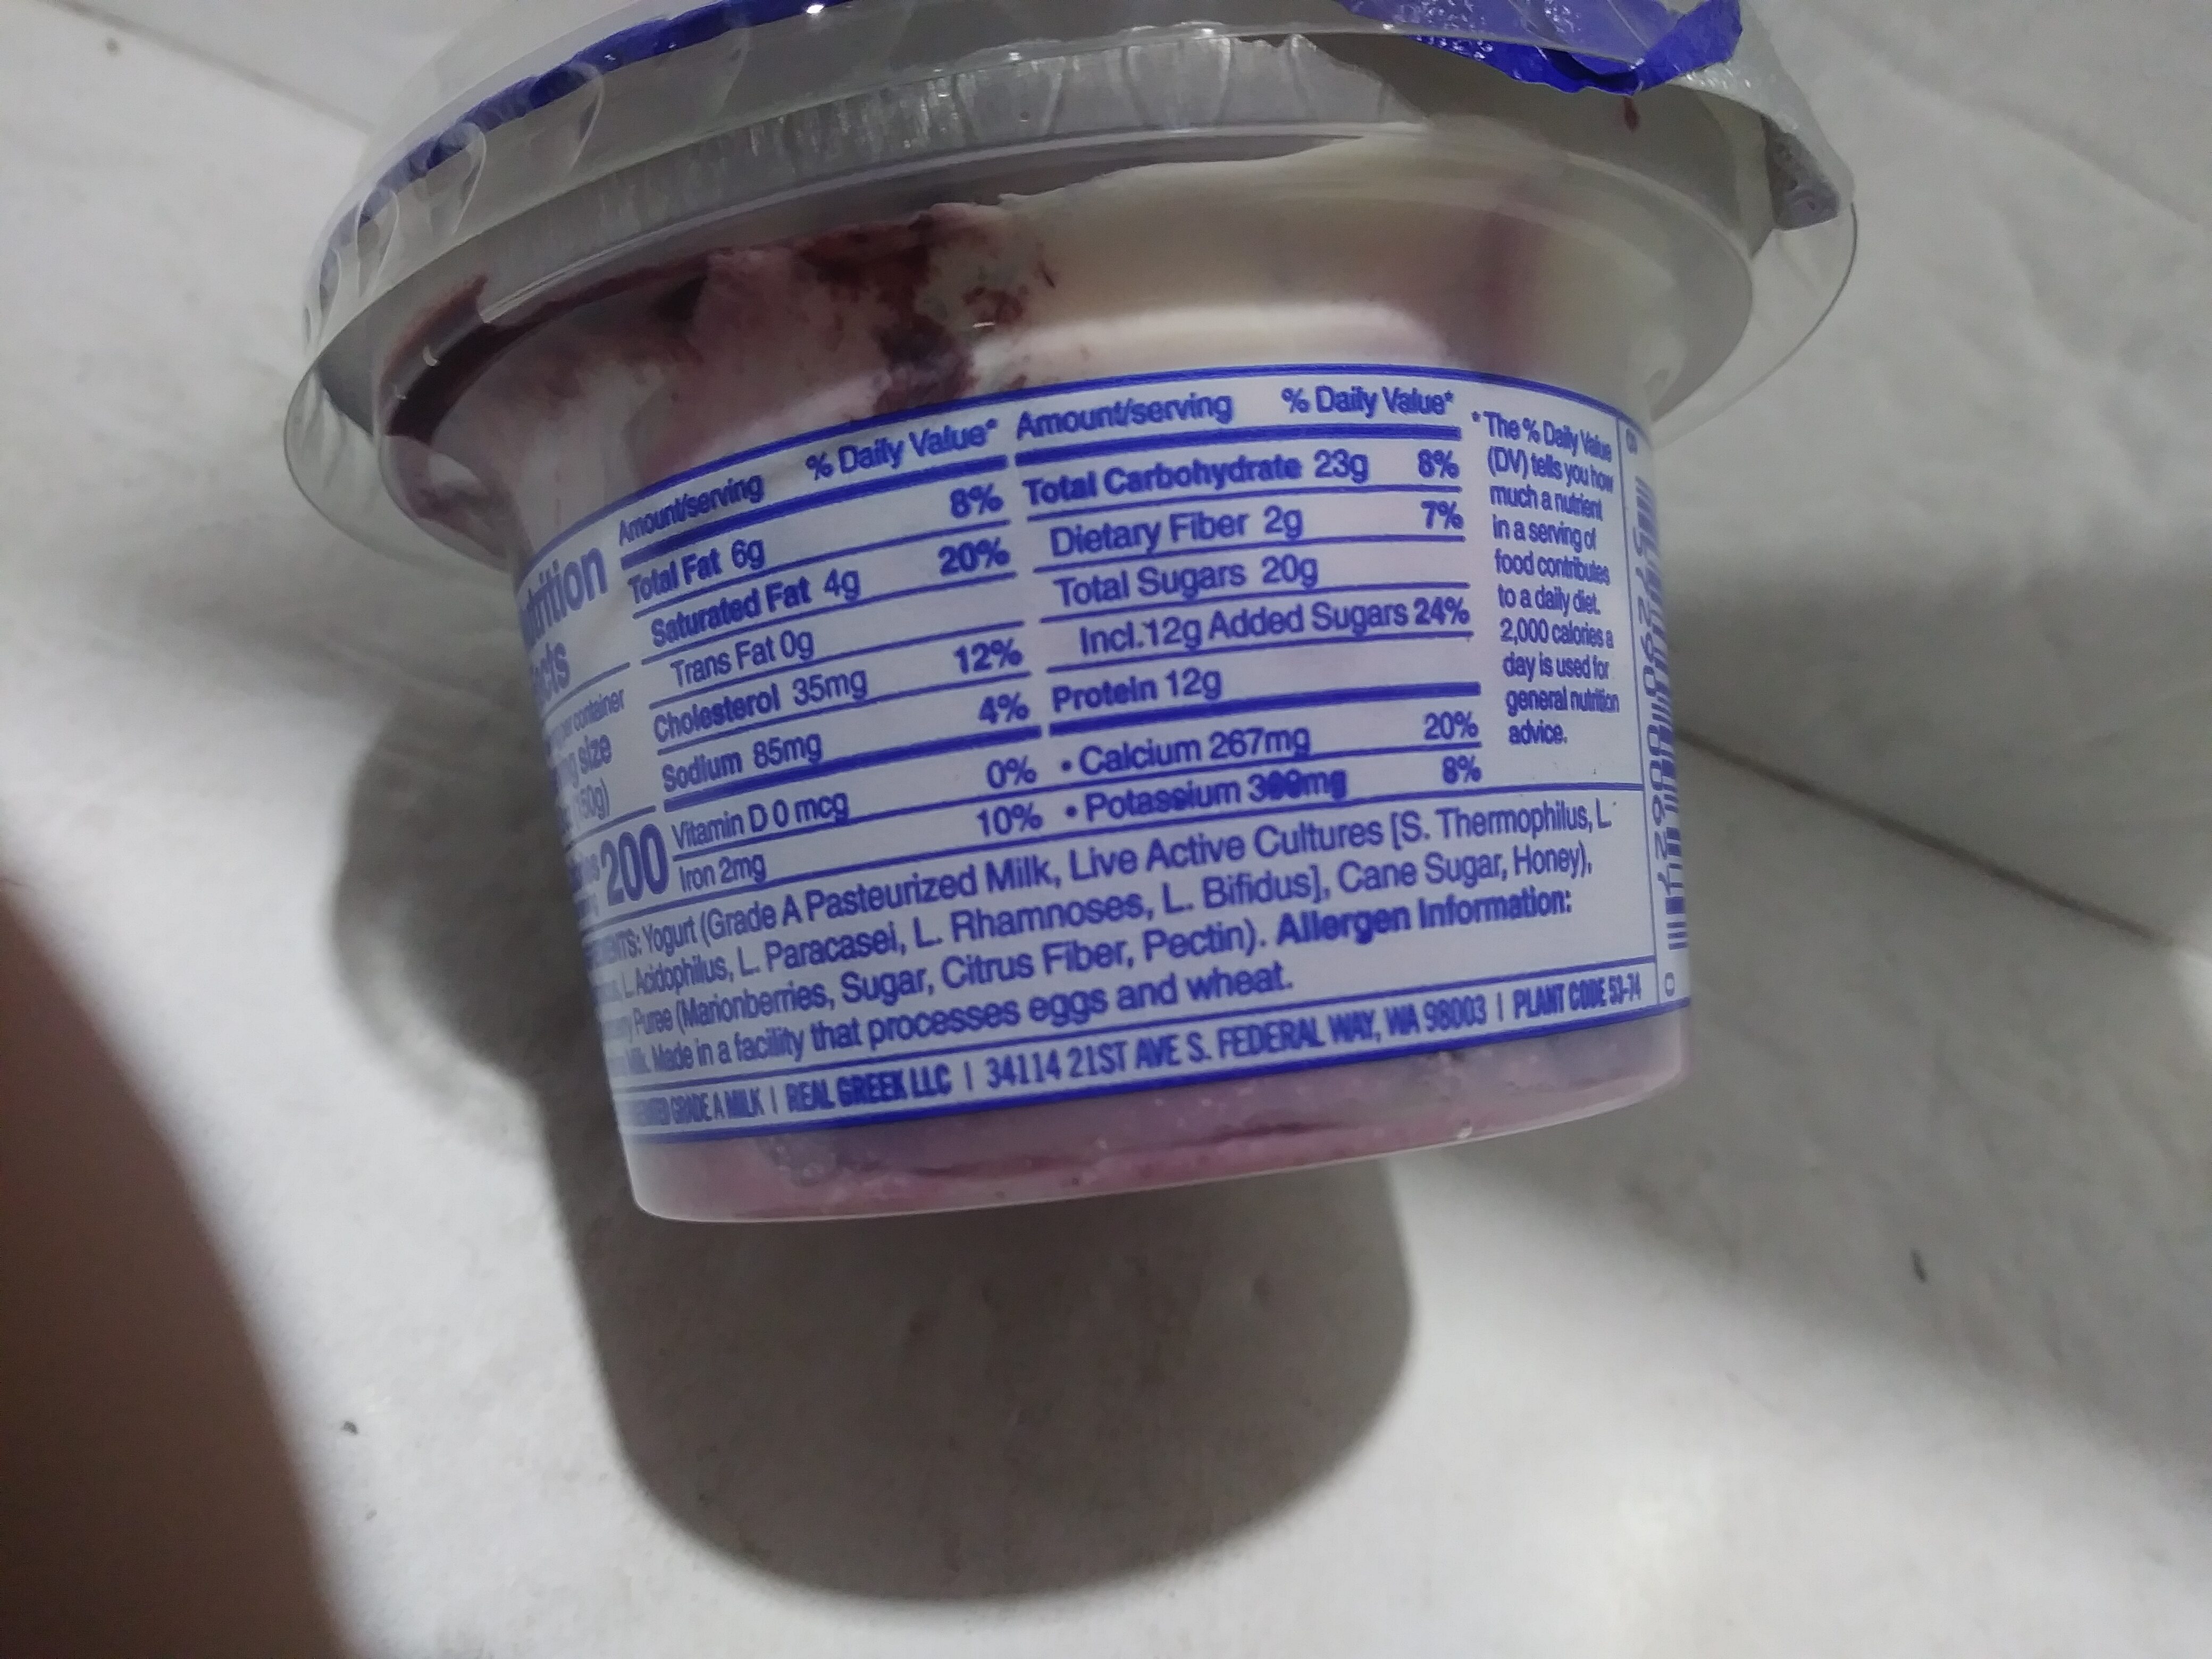 Marionberry real greek yogurt - Ingredients